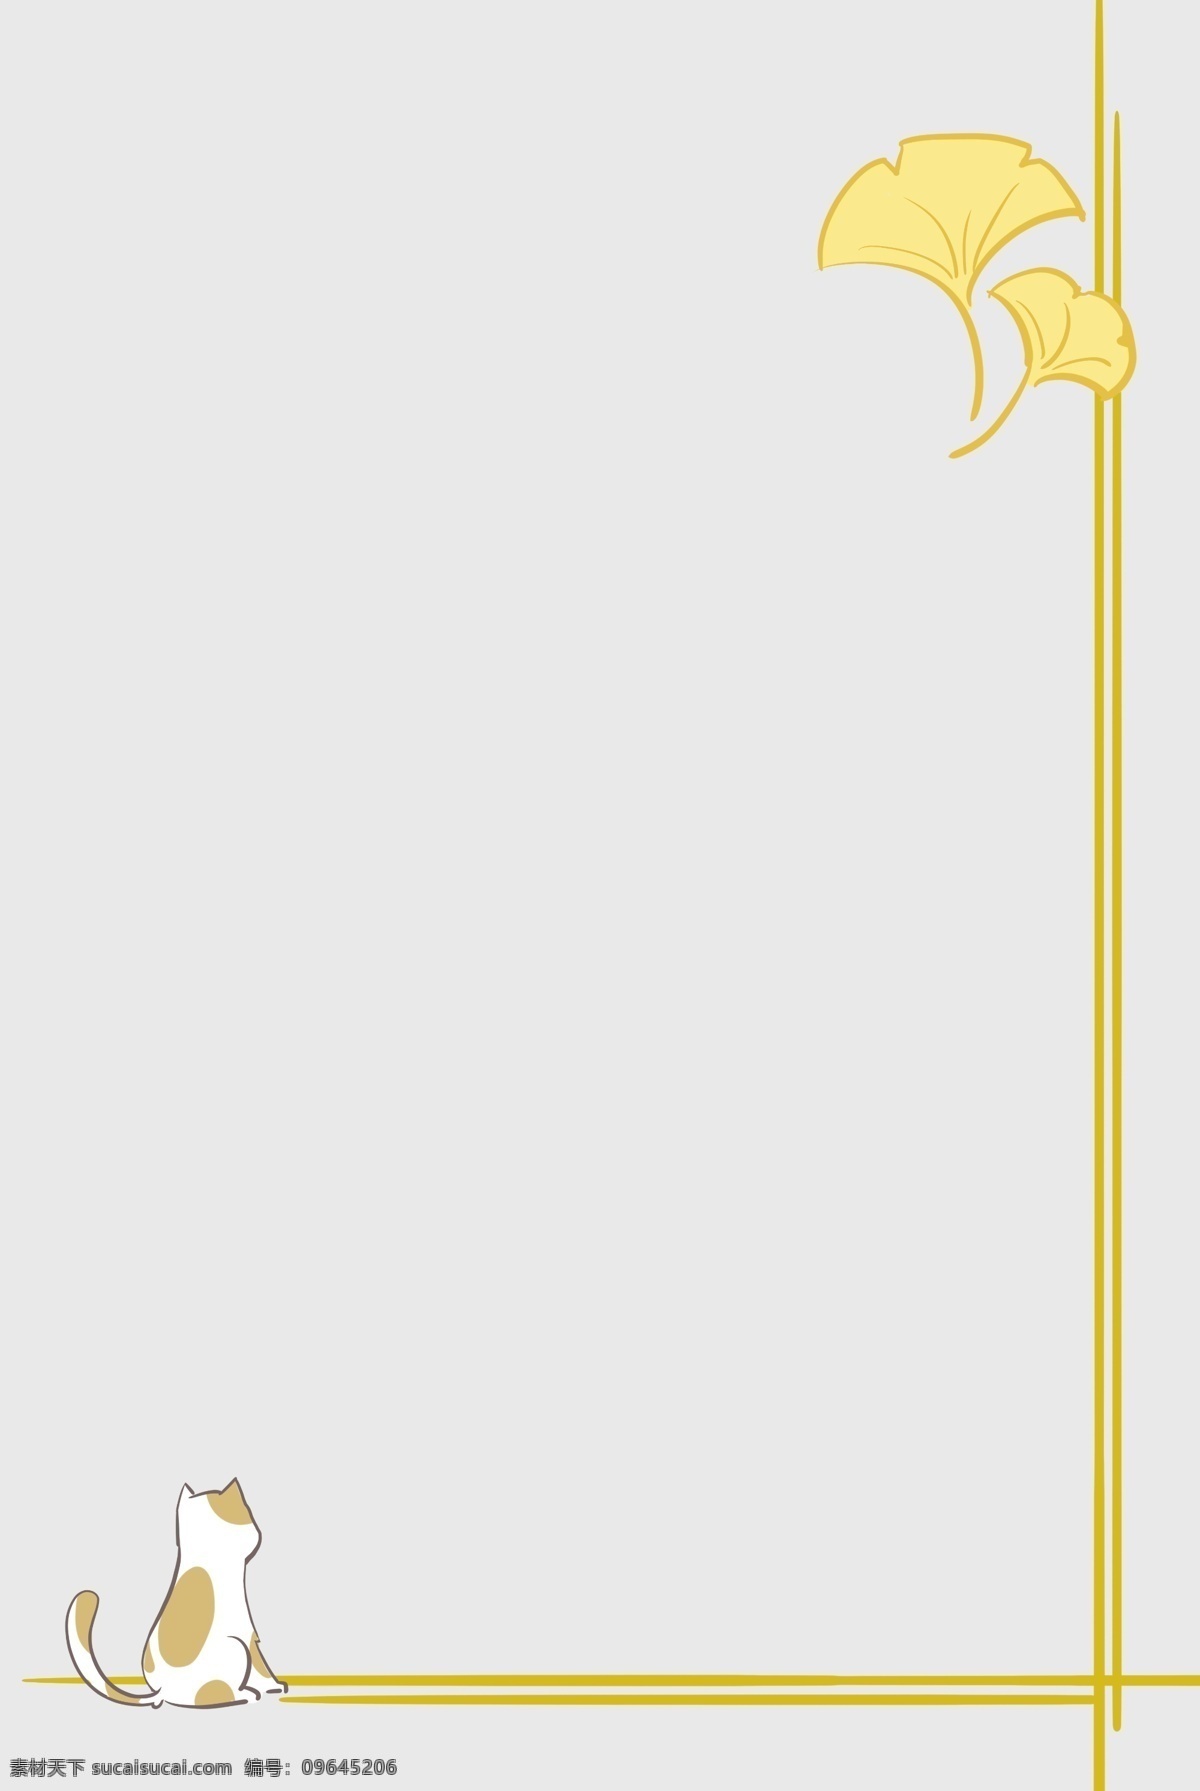 秋天 黄色 银杏叶 边框 金色 线条 条纹 猫咪 花猫 可爱 动物 招贴海报 装饰 插画 手账